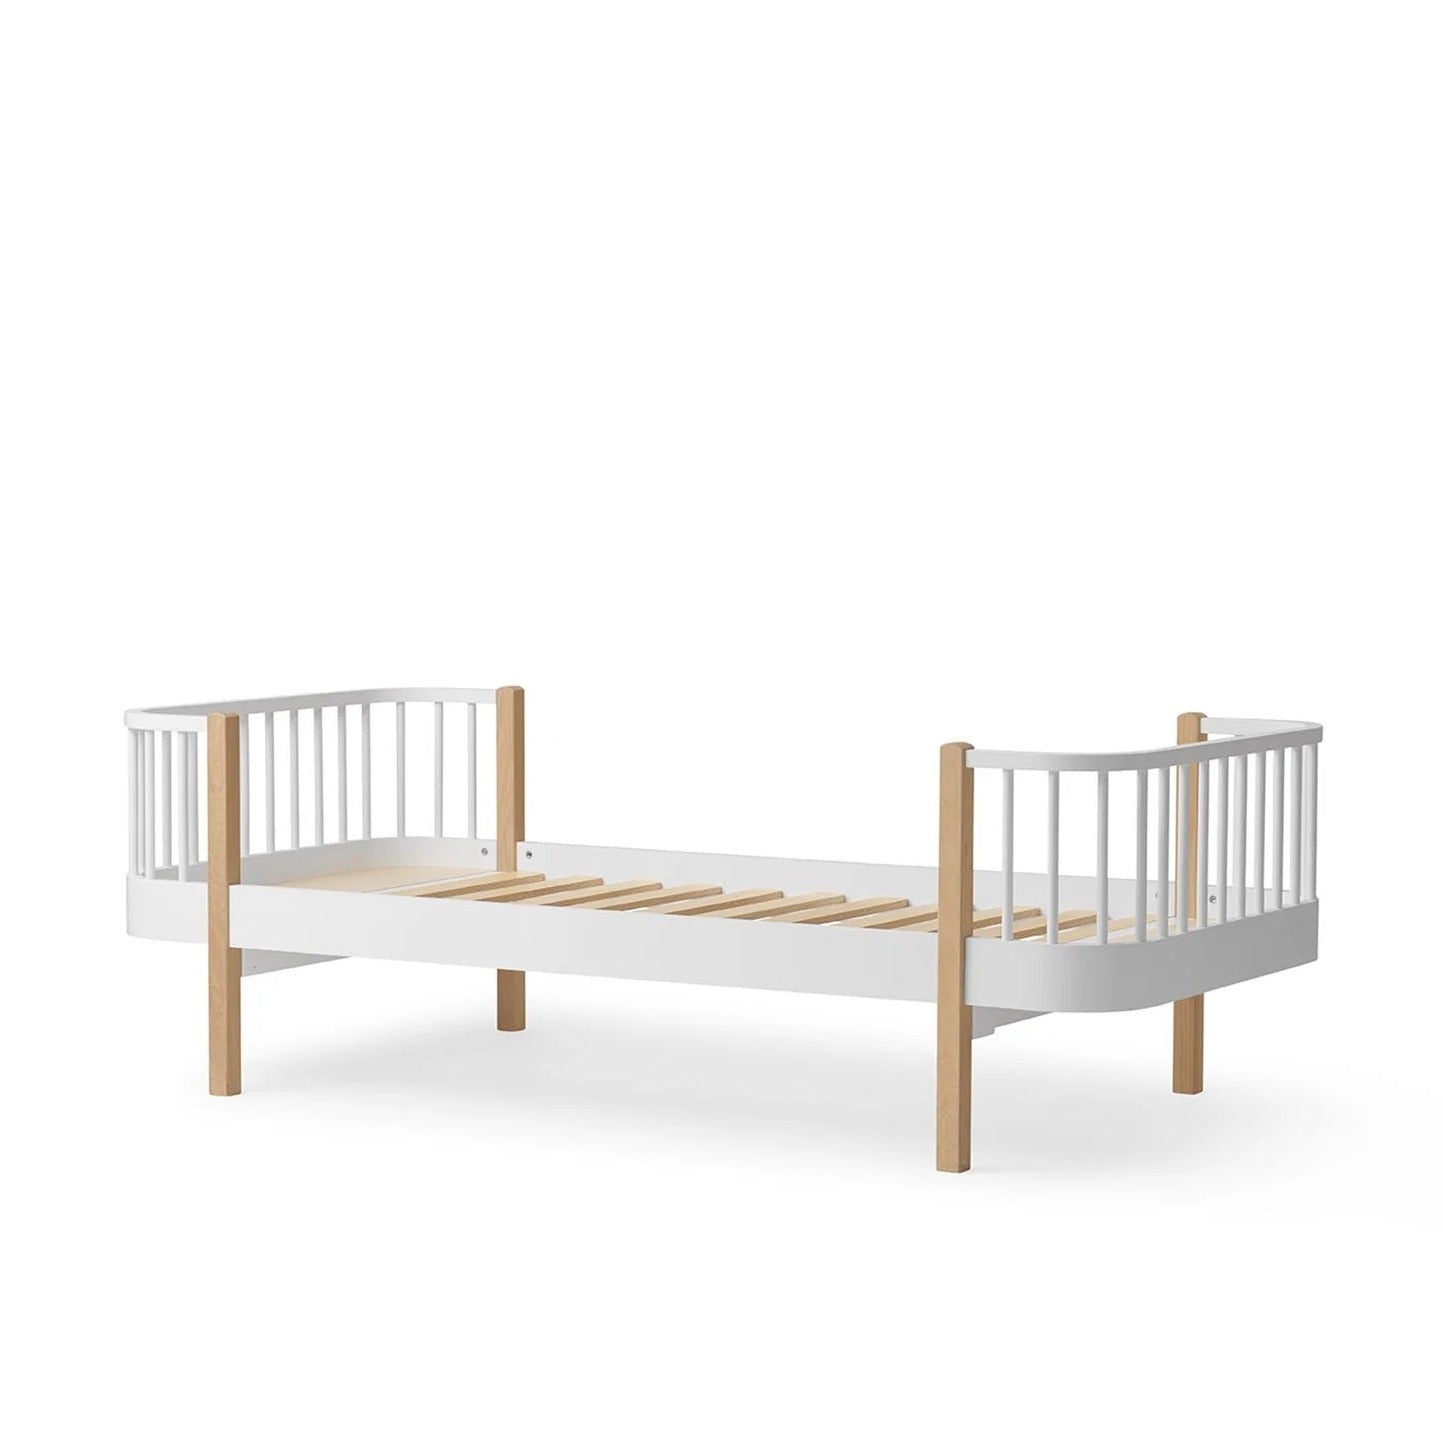 Oliver Furniture Wood Original Bed - White/Oak